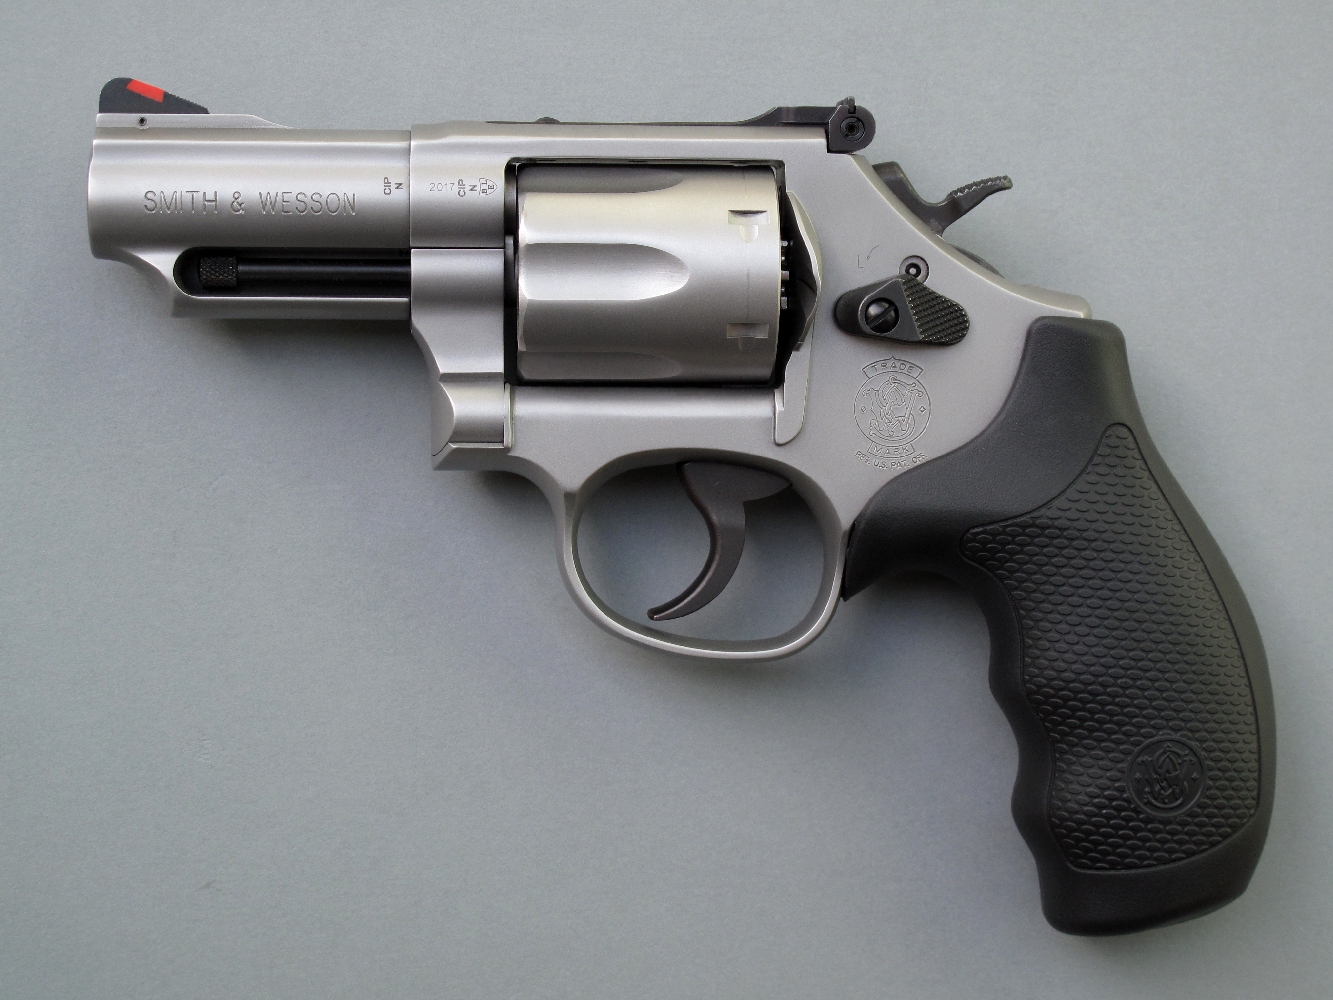 Le S&W modèle 66-8 est un revolver de service auquel son canon très court confère une grande maniabilité, tandis que sa réalisation en acier inoxydable le met l’arme à l’abri de la corrosion.